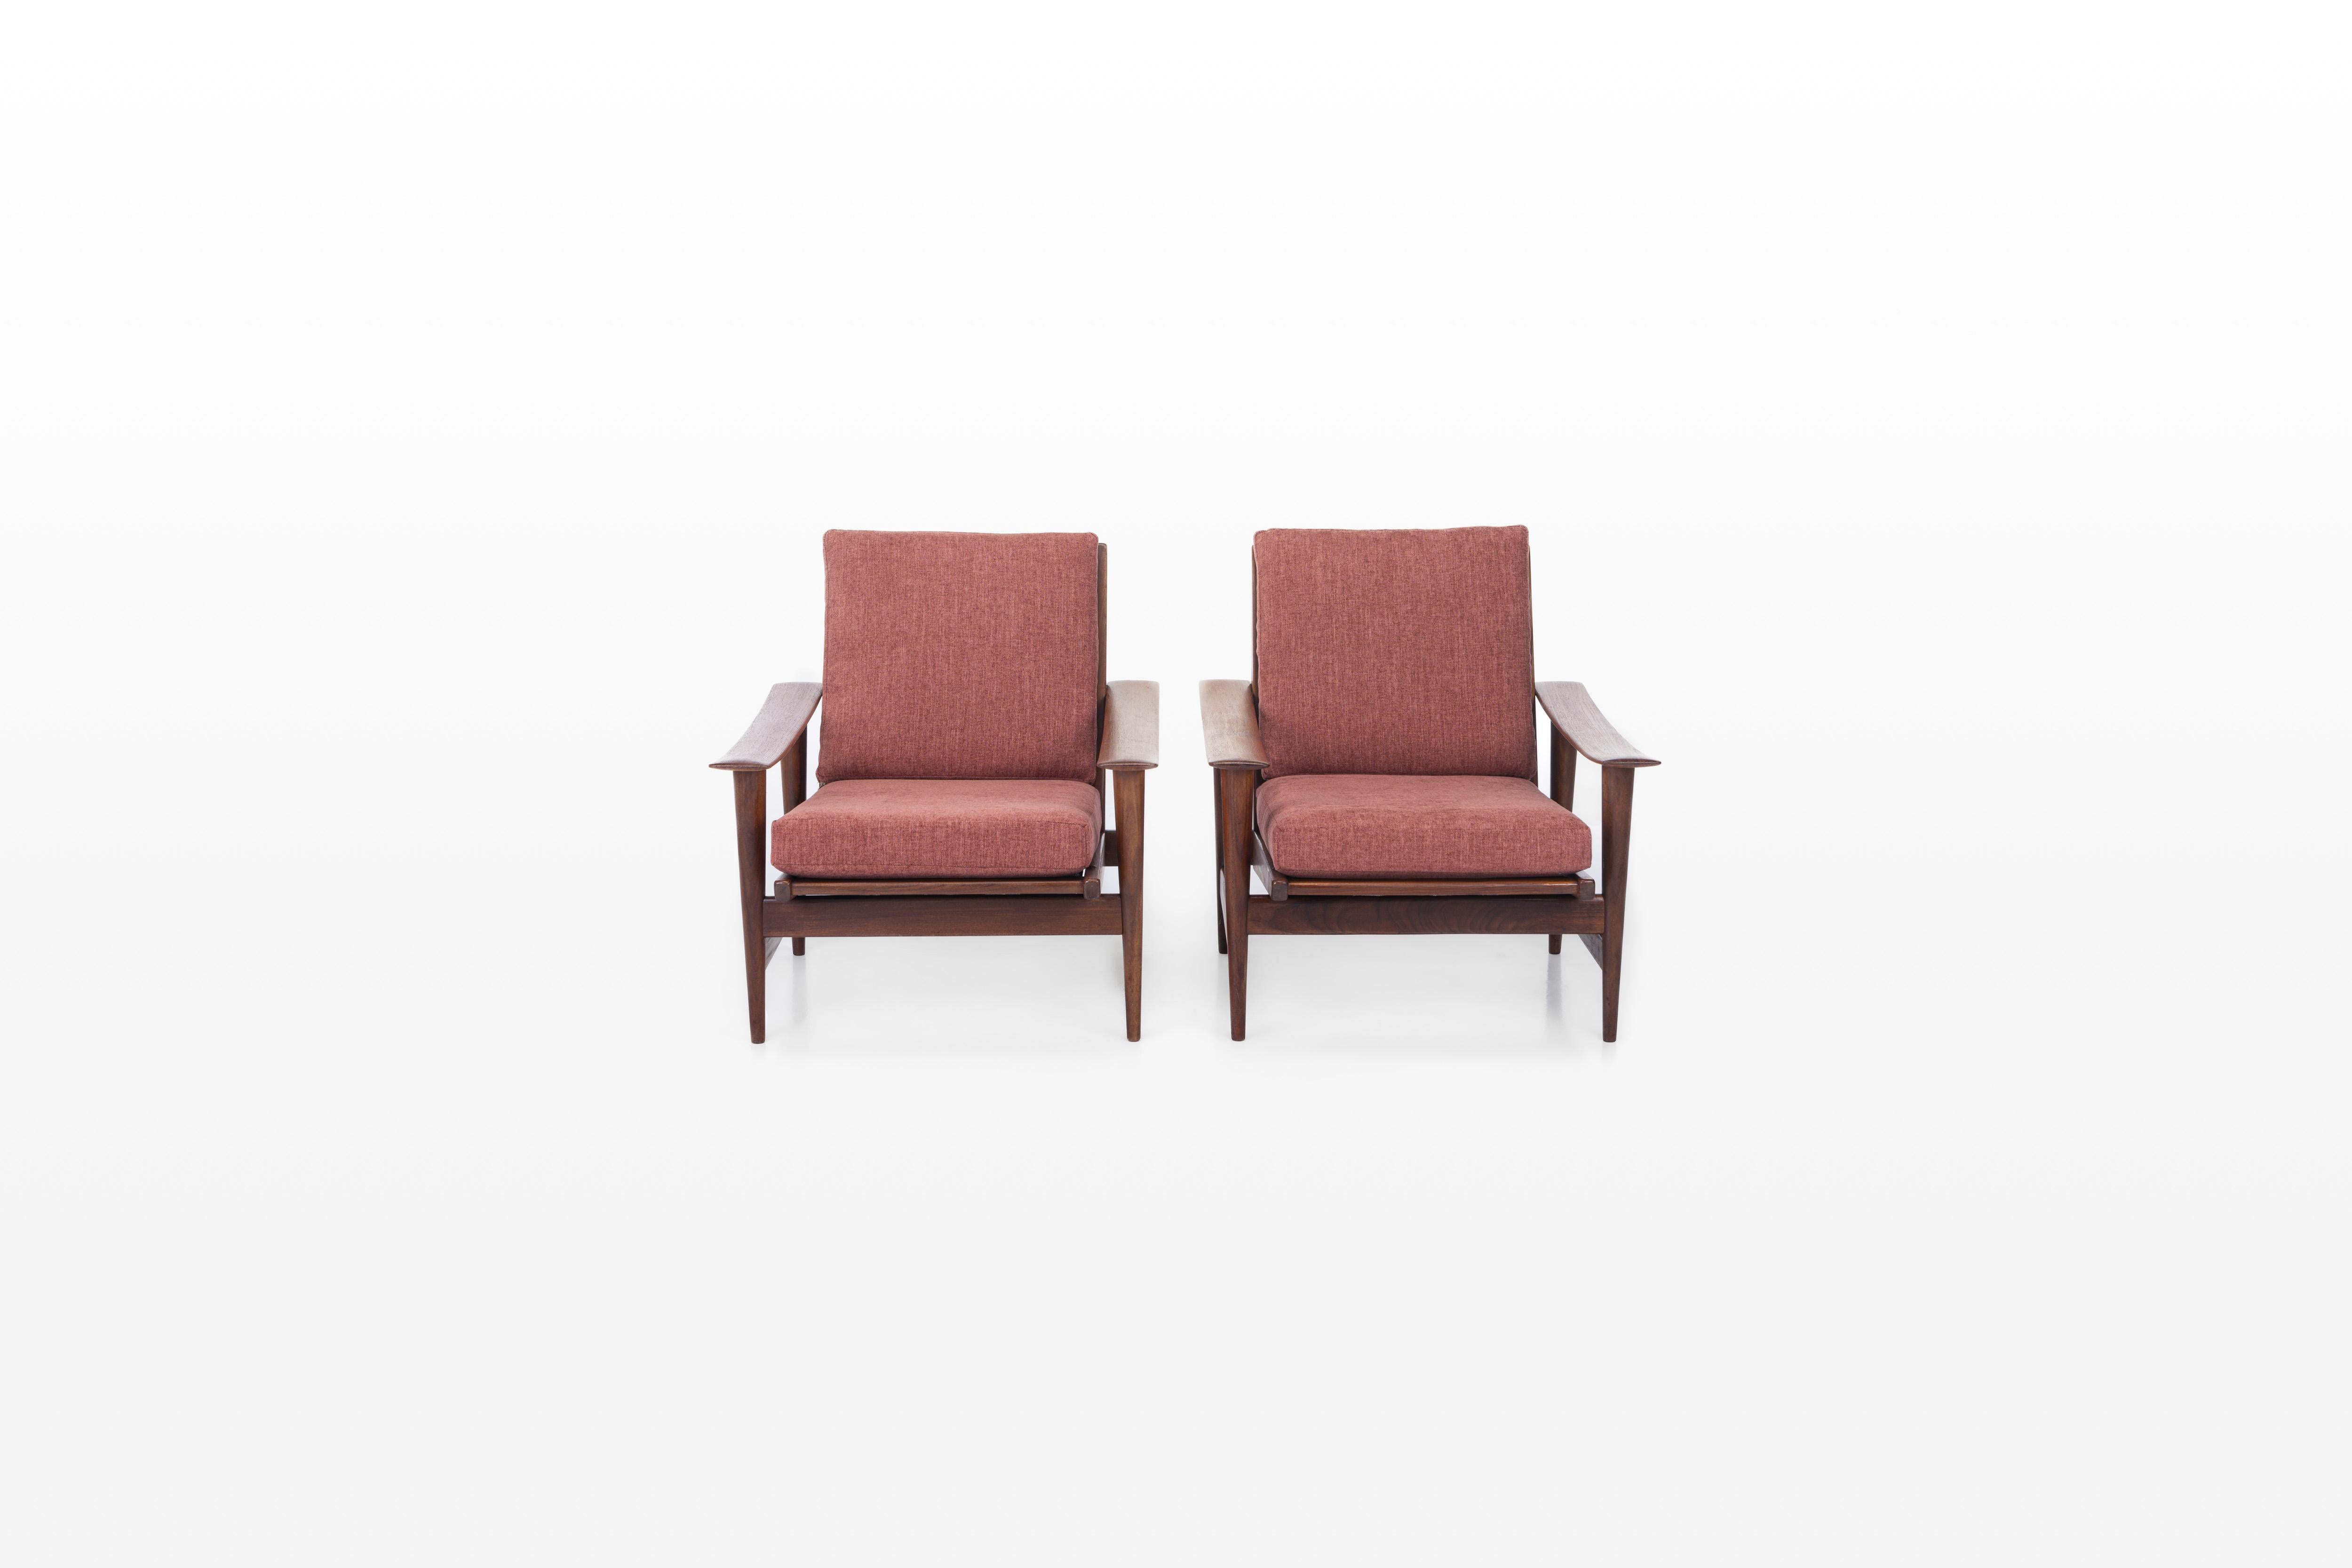 Ensemble de deux fauteuils vintage en très bon état. Les fauteuils sont recouverts d'un tissu bordeaux. Prix pour le lot de deux.

Dimensions :
W: 72 cm
D : 80 cm
H : 78 cm